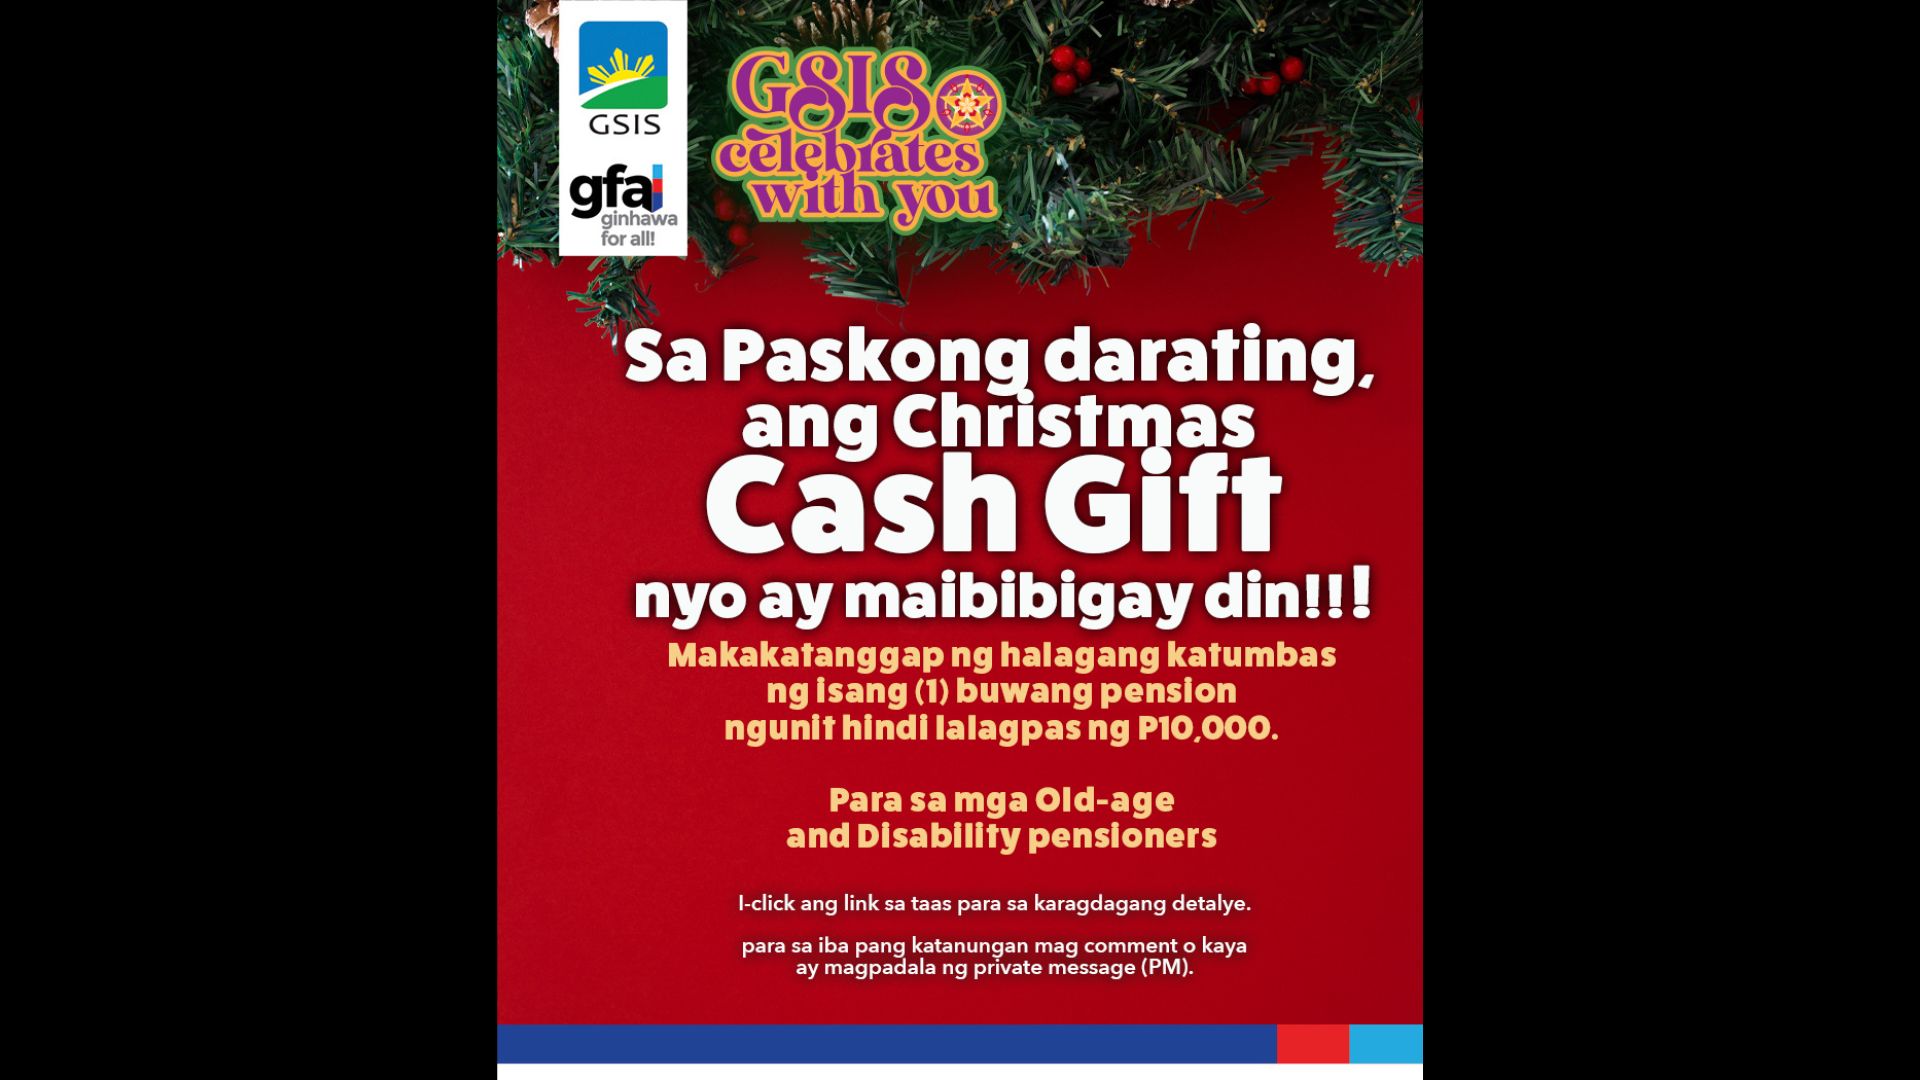 Cash gift ng GSIS pensioners matatanggap na simula bukas, Dec. 6